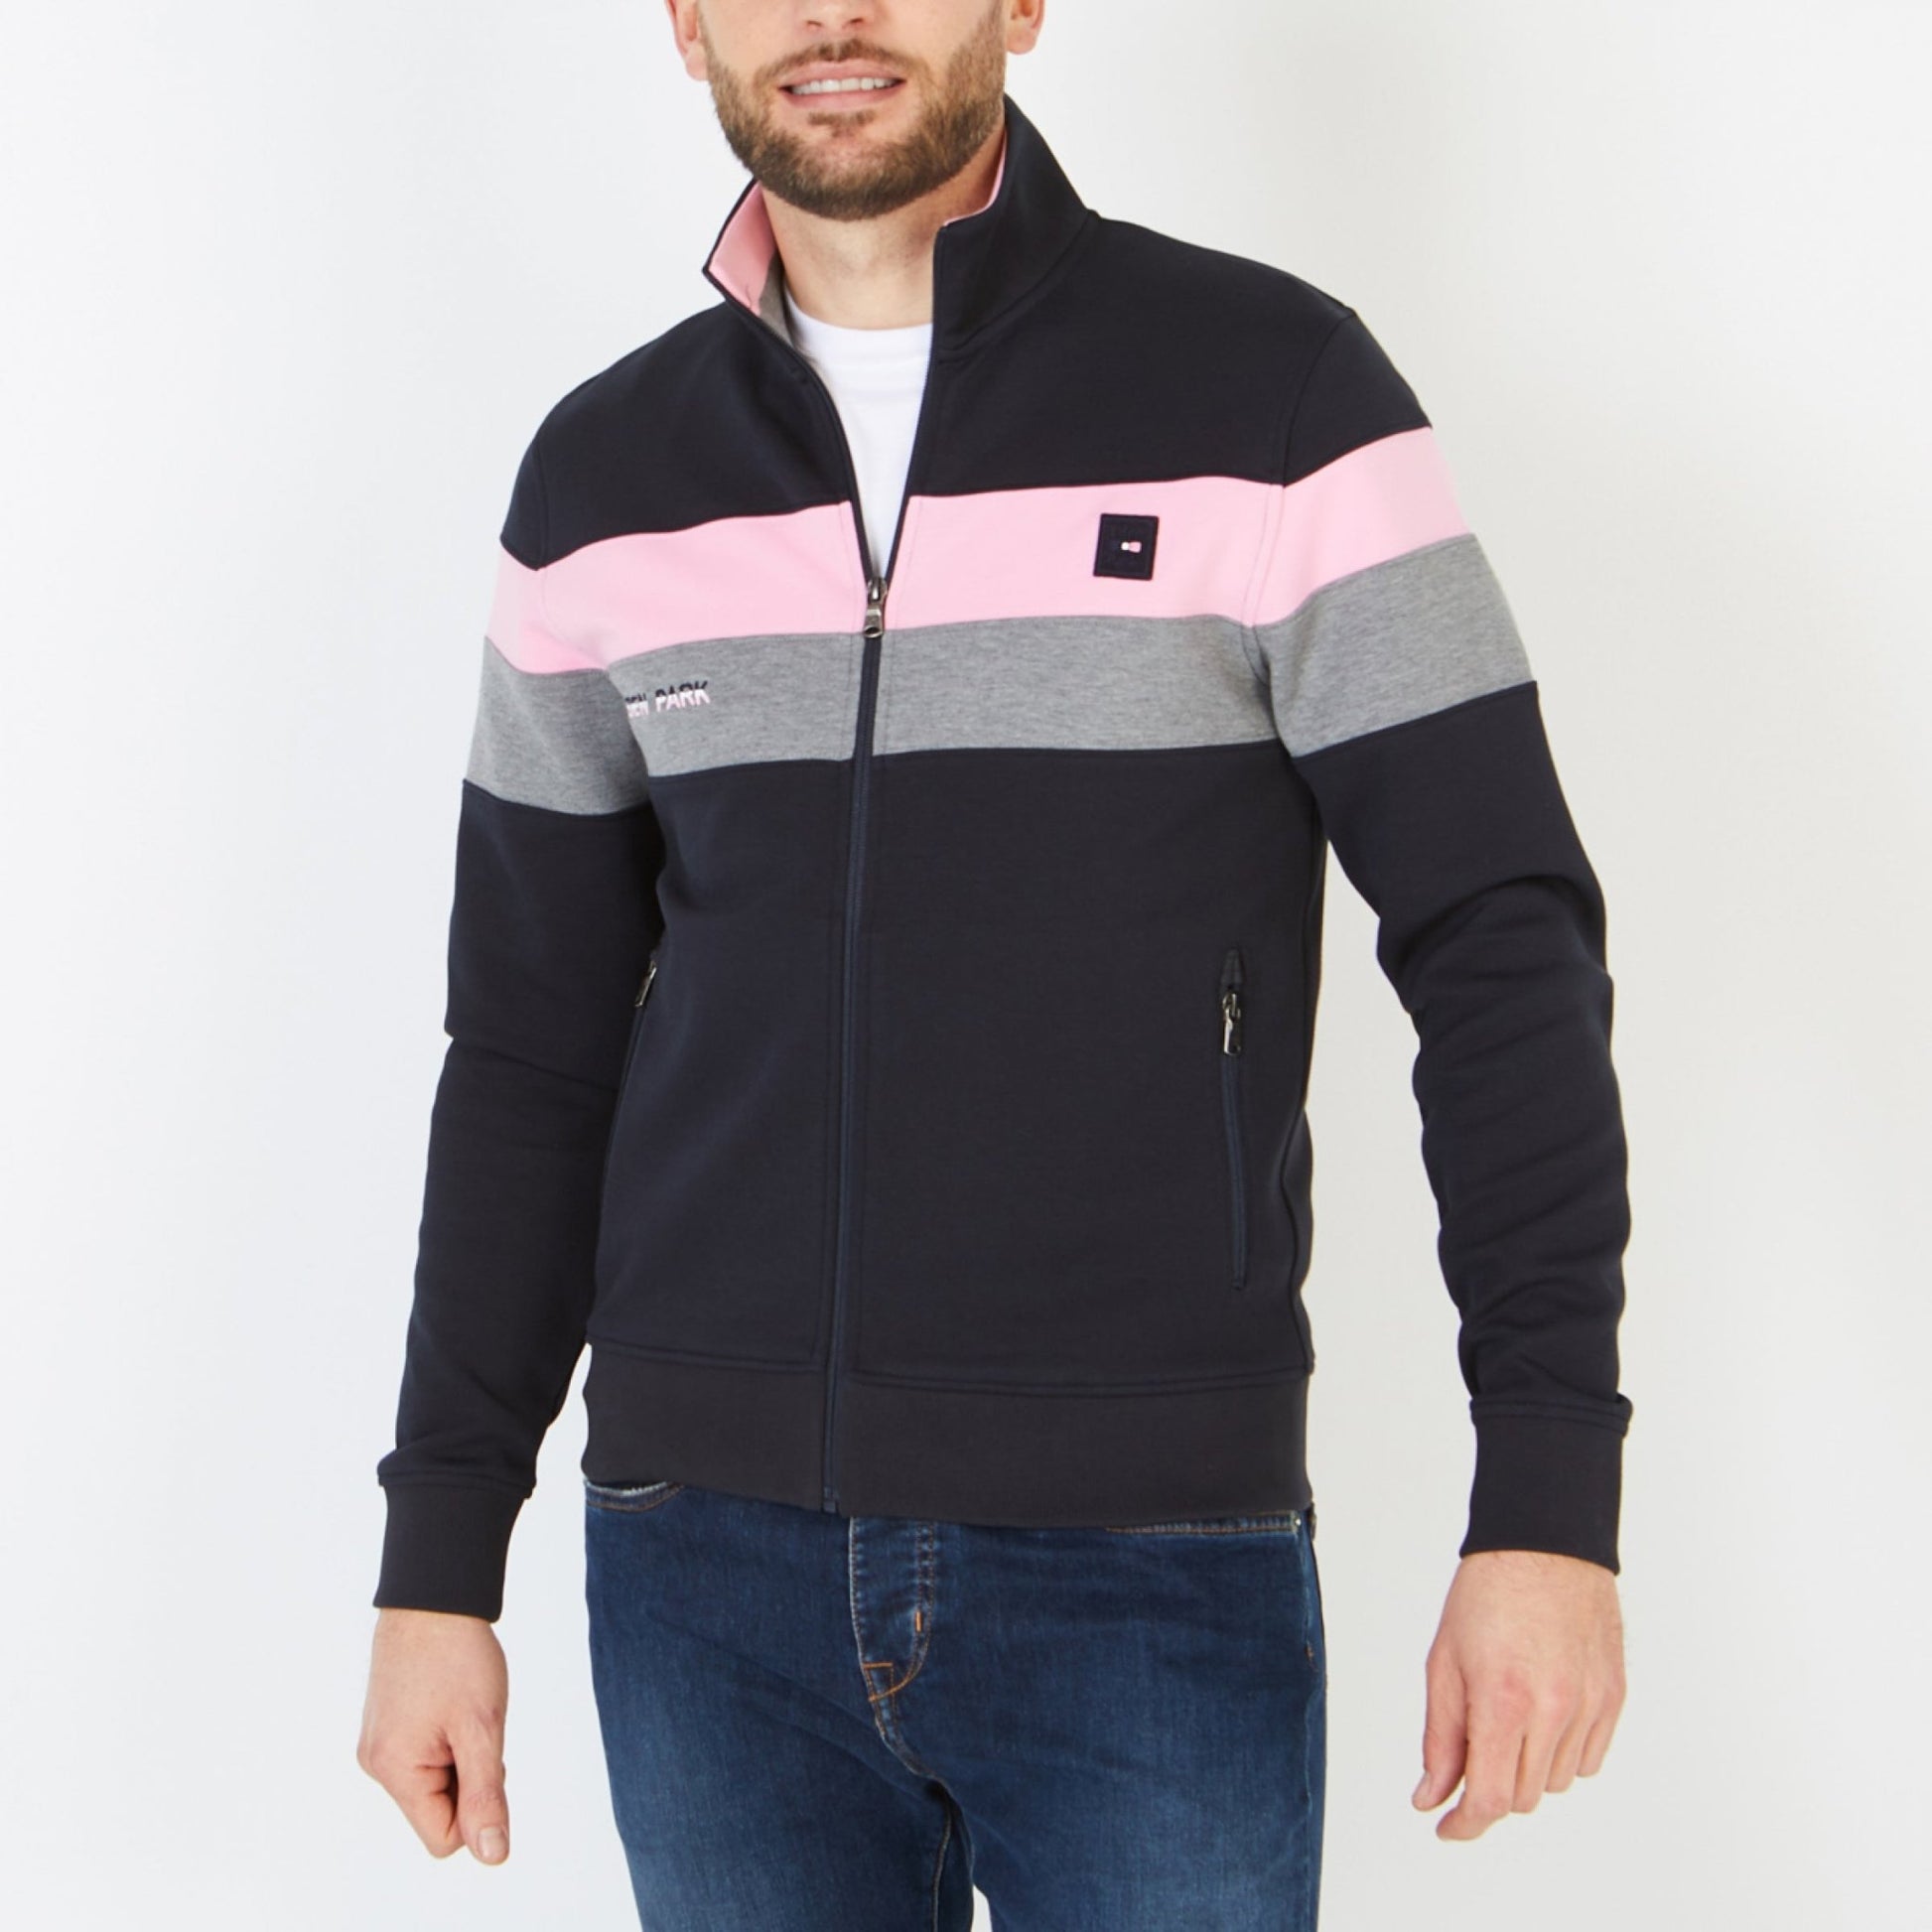 Eden Park Full Zip Block Stripe Sweatshirt - Matt O'Brien Fashions